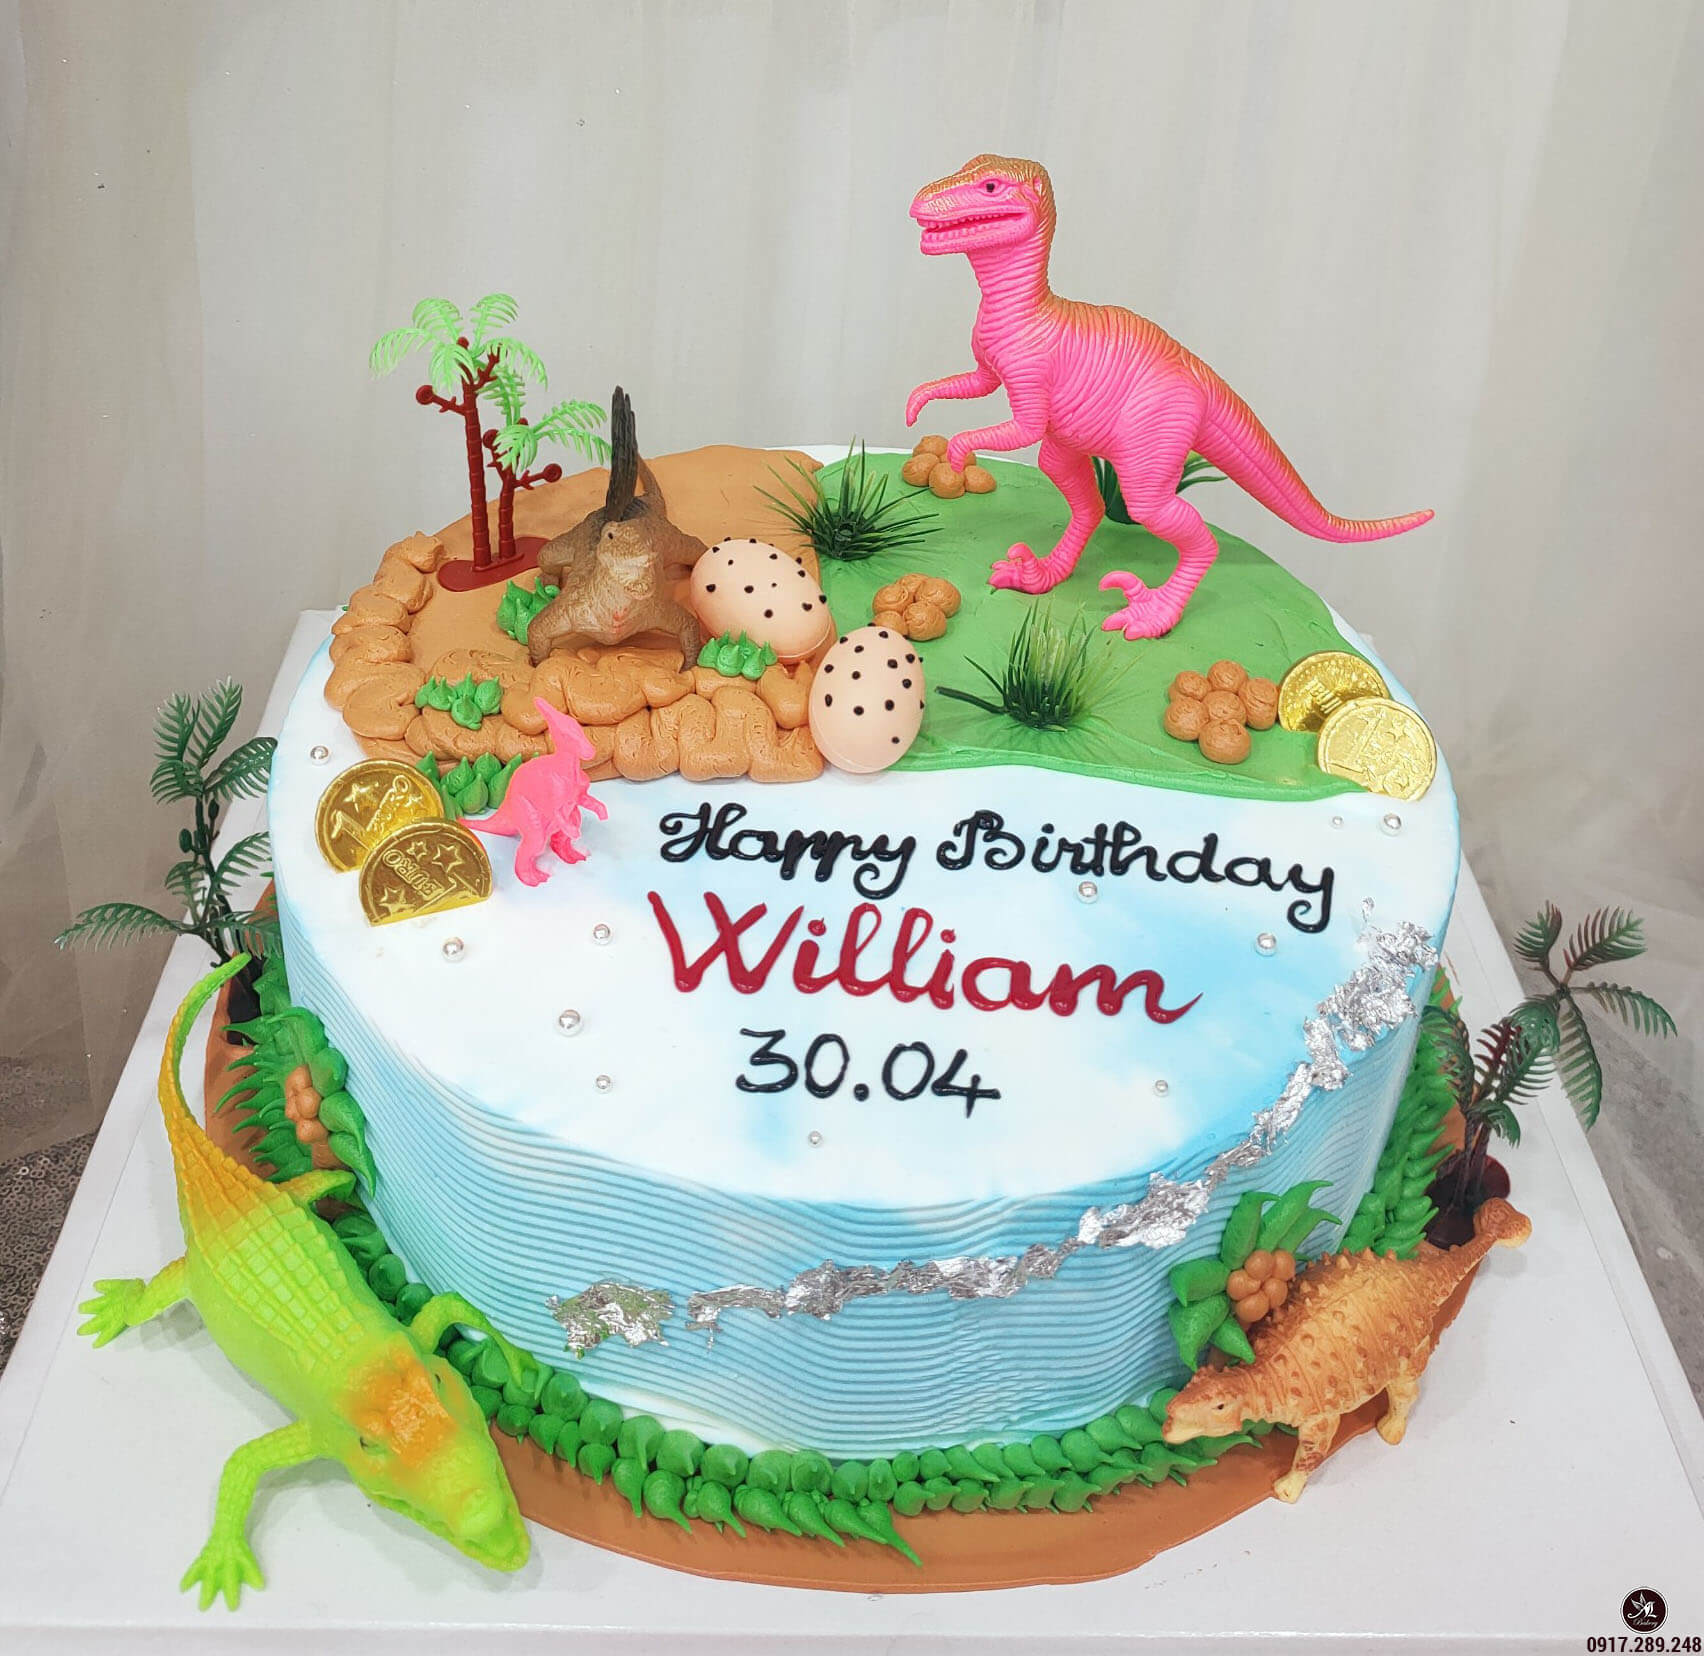 Bánh kem sinh nhật blue color hình 2 con cái khủng long thời tiền sử đang được sướng đùa  Bánh Thiên  Thần  Chuyên nhận bịa bánh sinh nhật bám theo mẫu